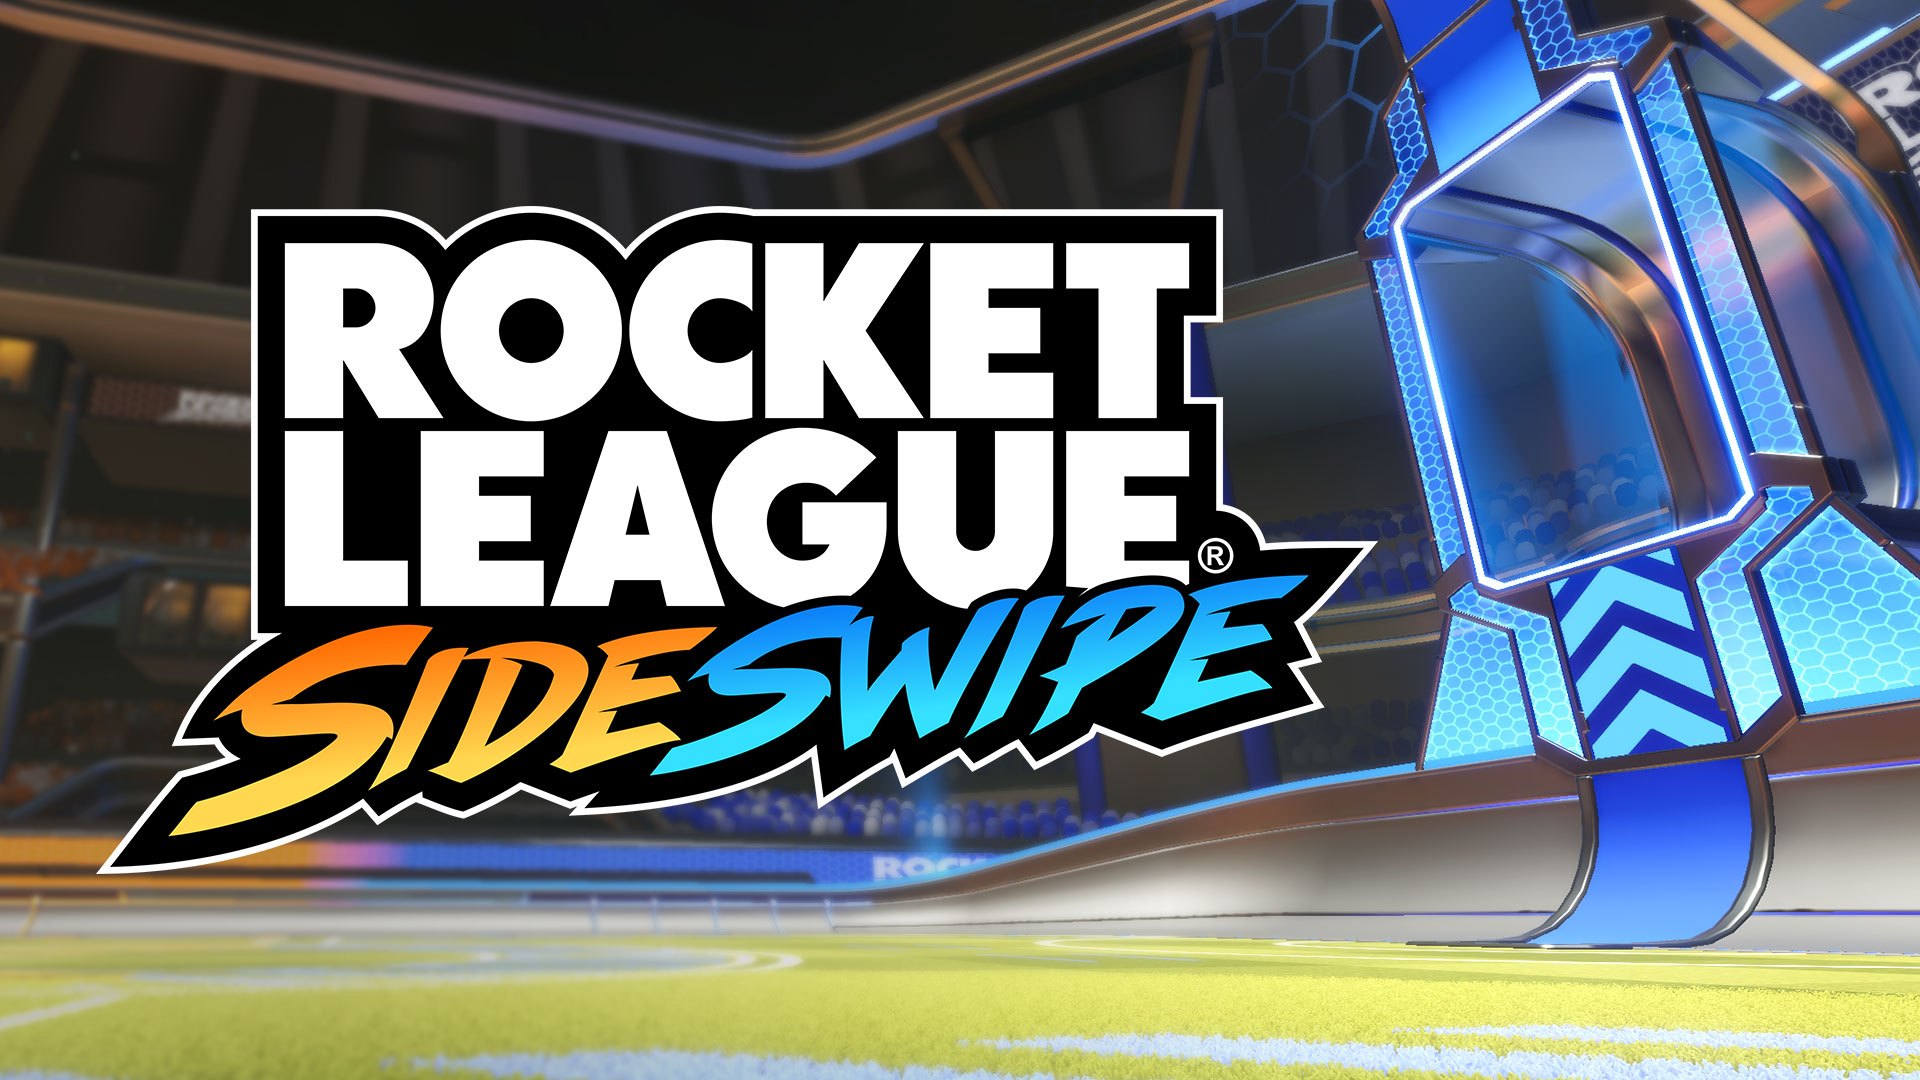 Rocket-League-Sideswipe